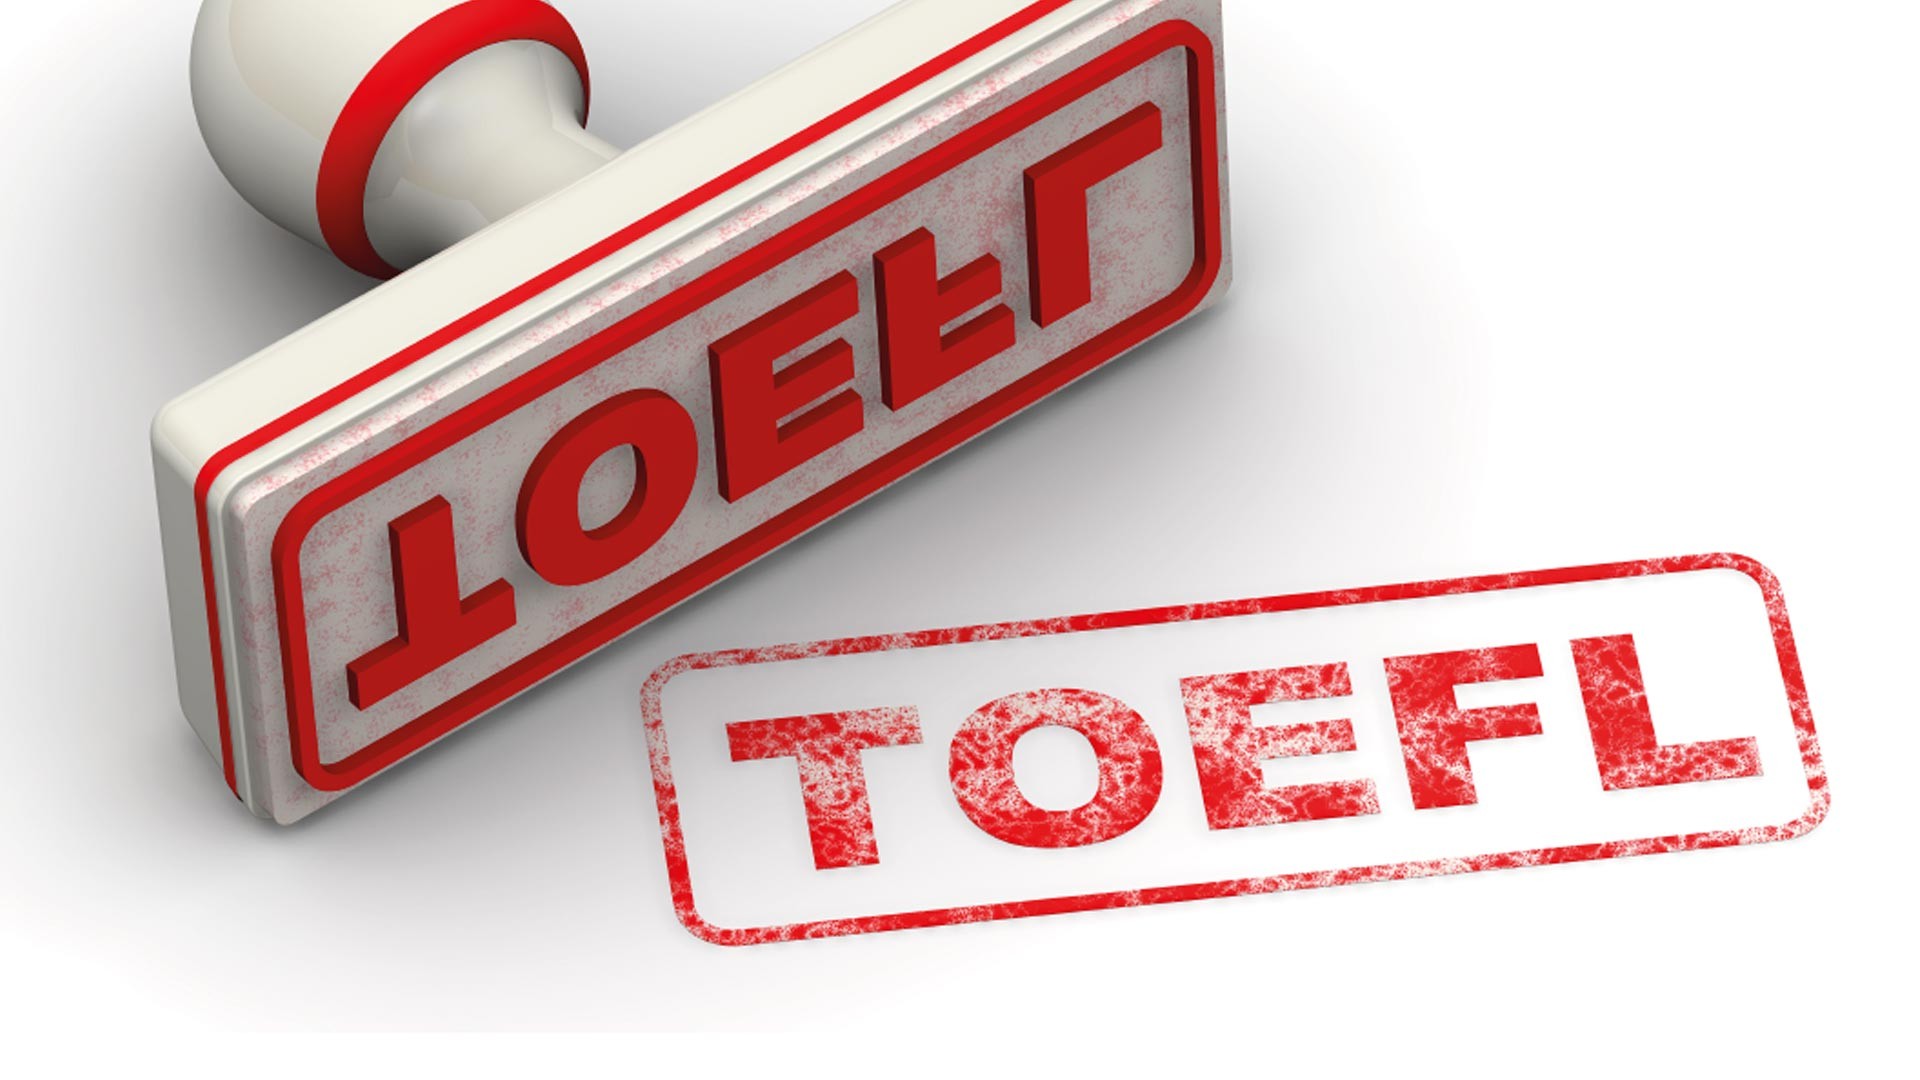 Thang điểm bài thi TOEFL iBT là như thế nào? Cách chấm điểm ra sao?